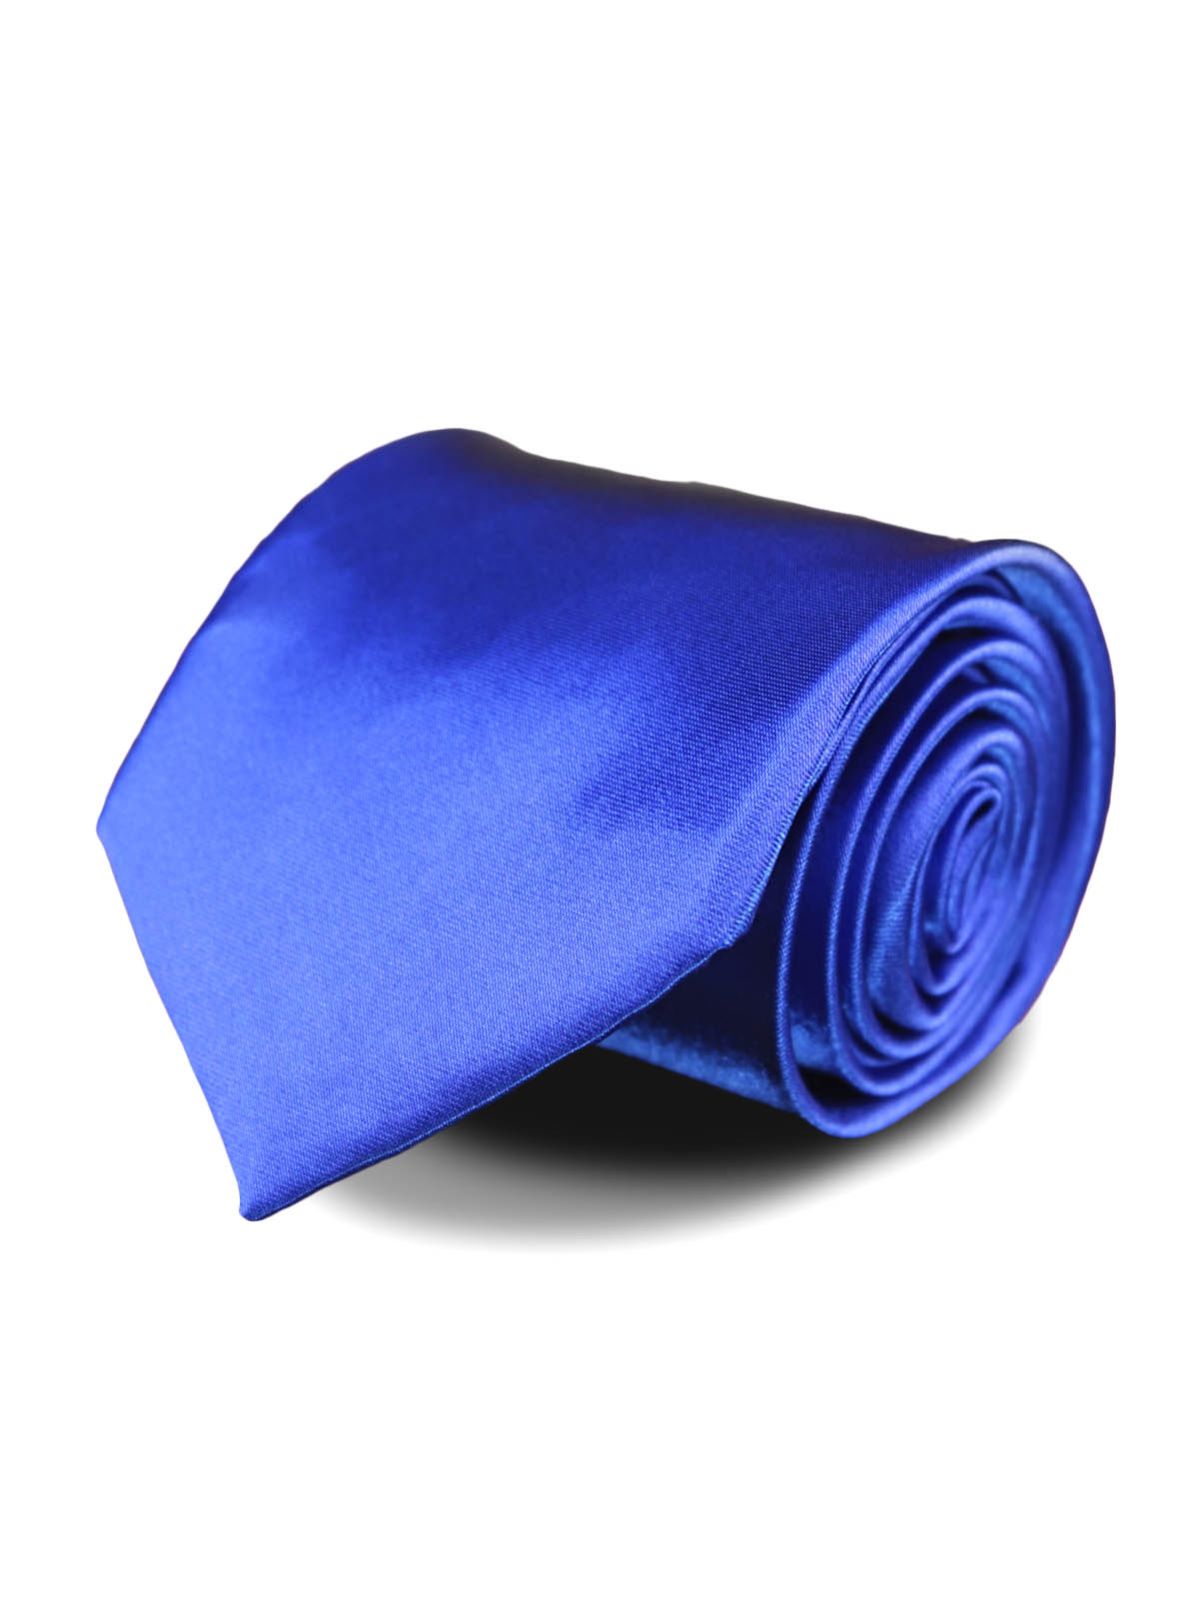 Галстук атласный широкий синий описание: Фасон - Широкий галстук, Материал - Полиэстер, Цвет - Синий, Размер - 8,5 см. х 150 см., Страна производства - Турция.